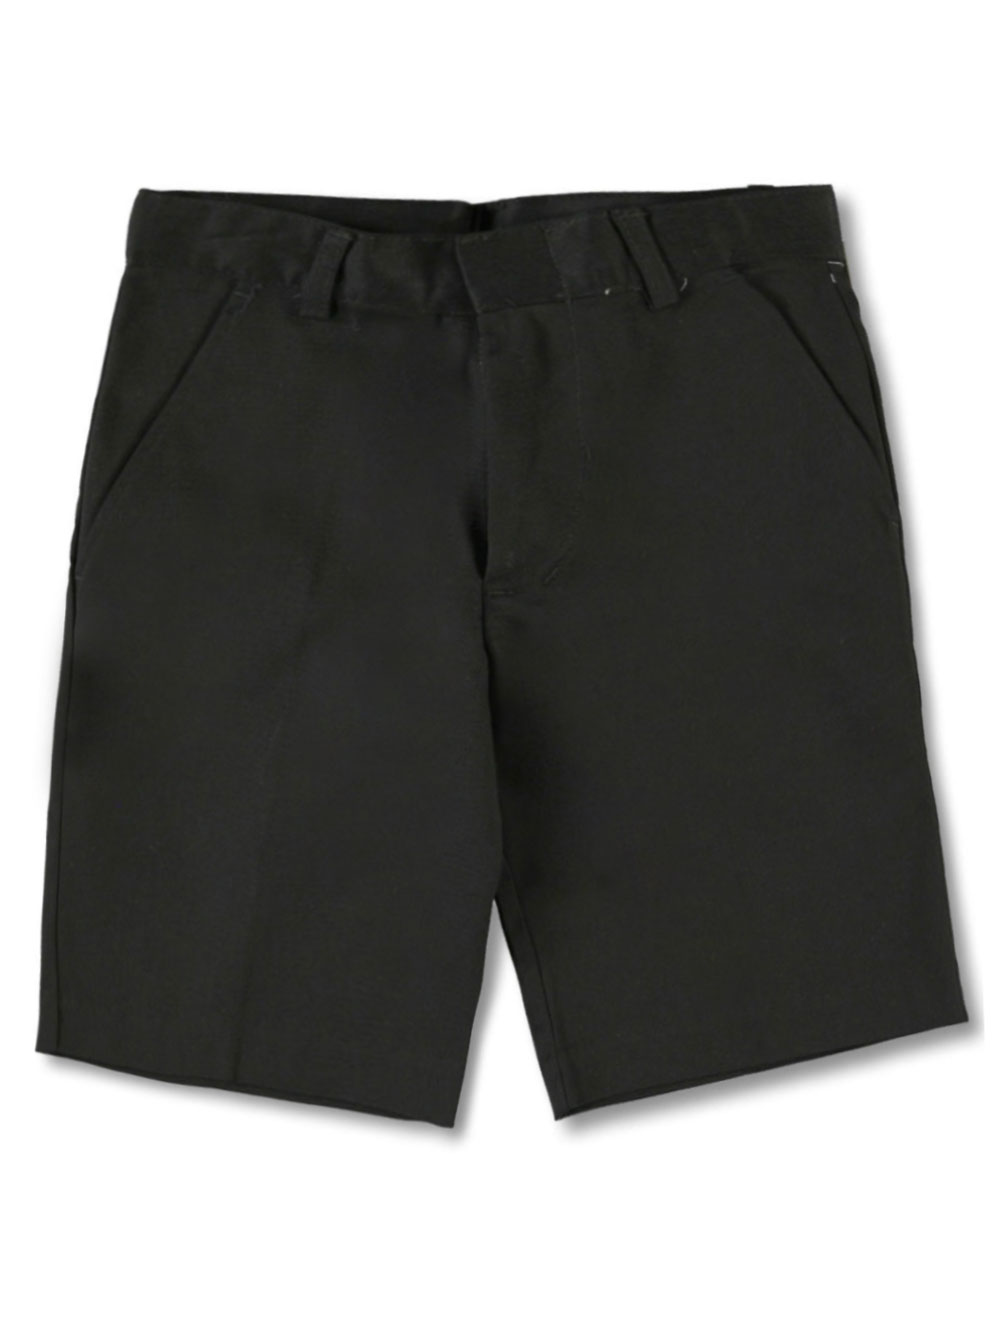 Flat Front Unisex Shorts